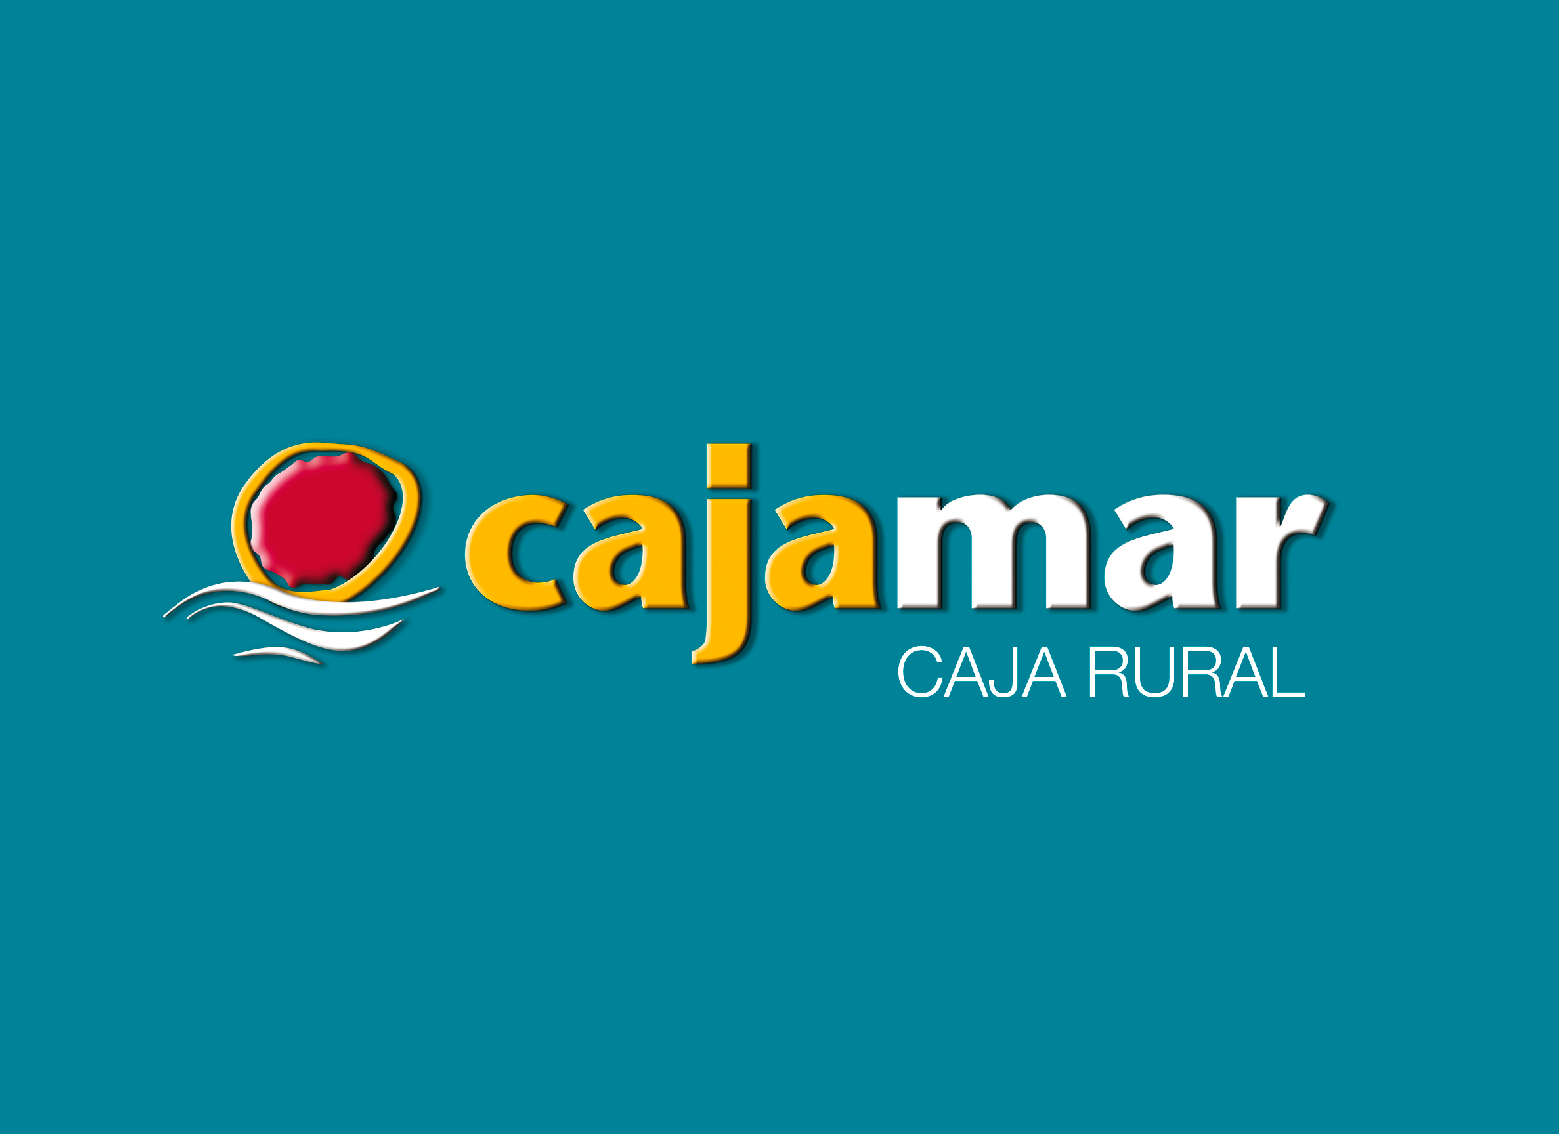 Cajamar Caja Rural Bank - Secret Serrania de Ronda